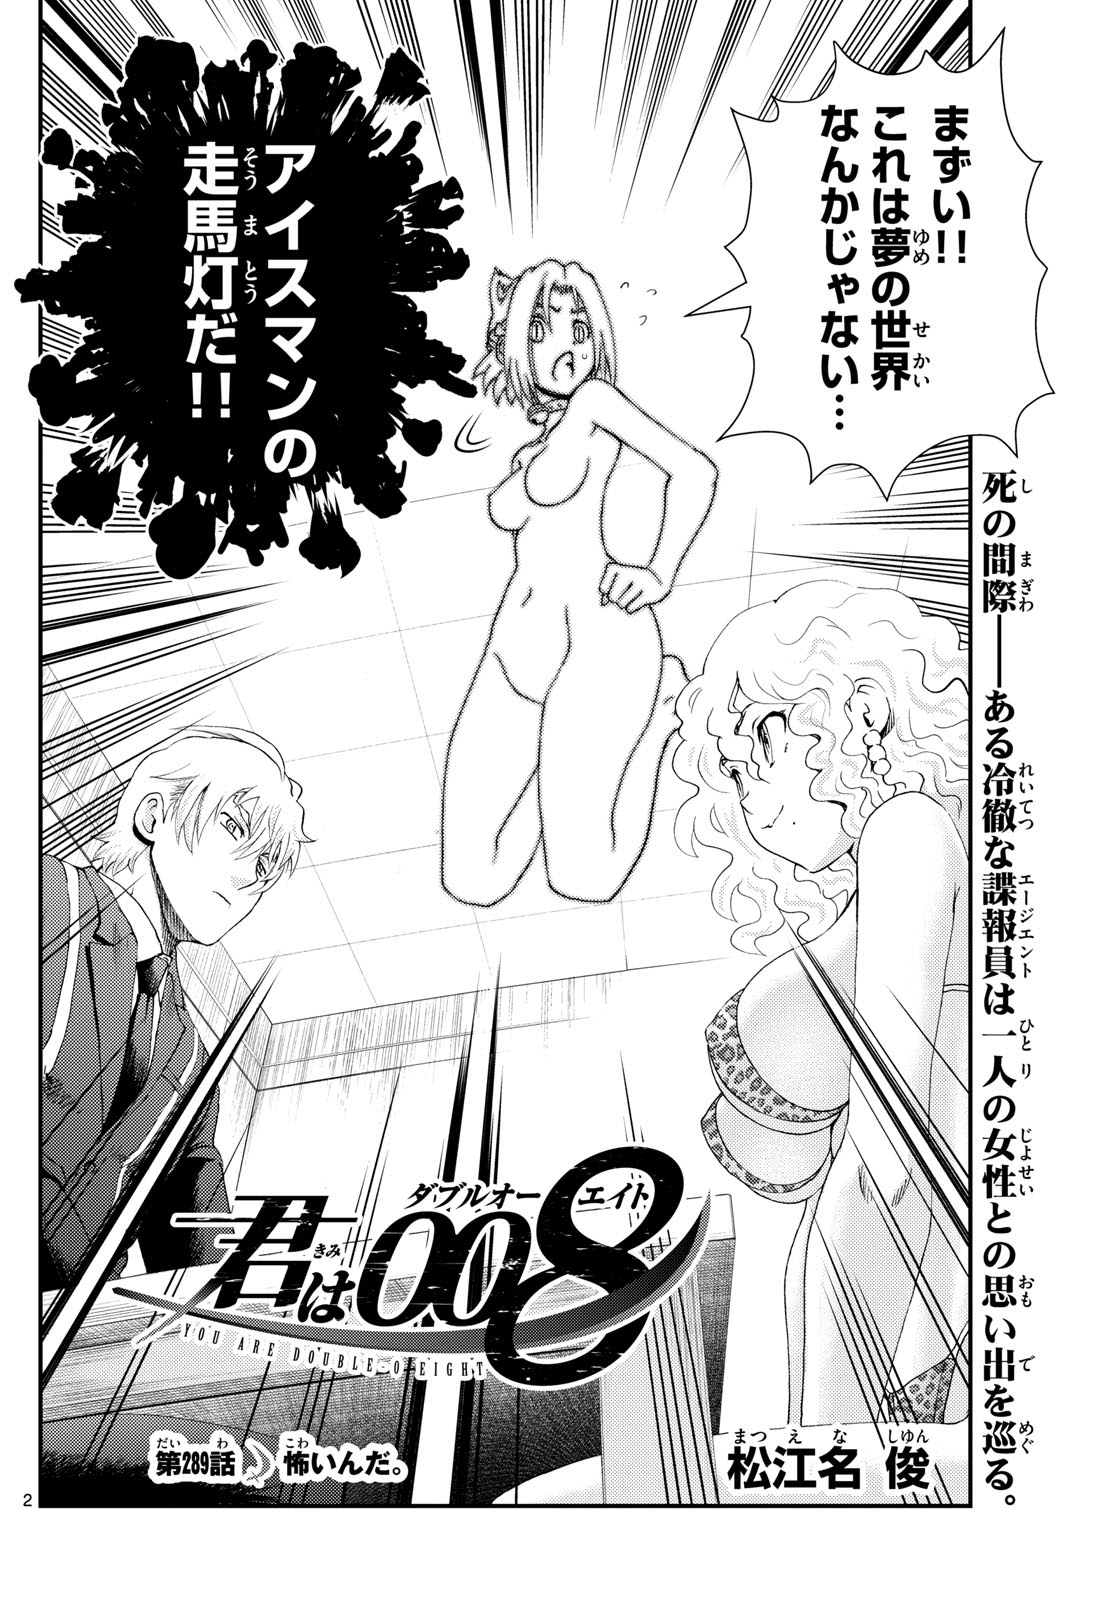 Kimi wa 008 - Chapter 289 - Page 2